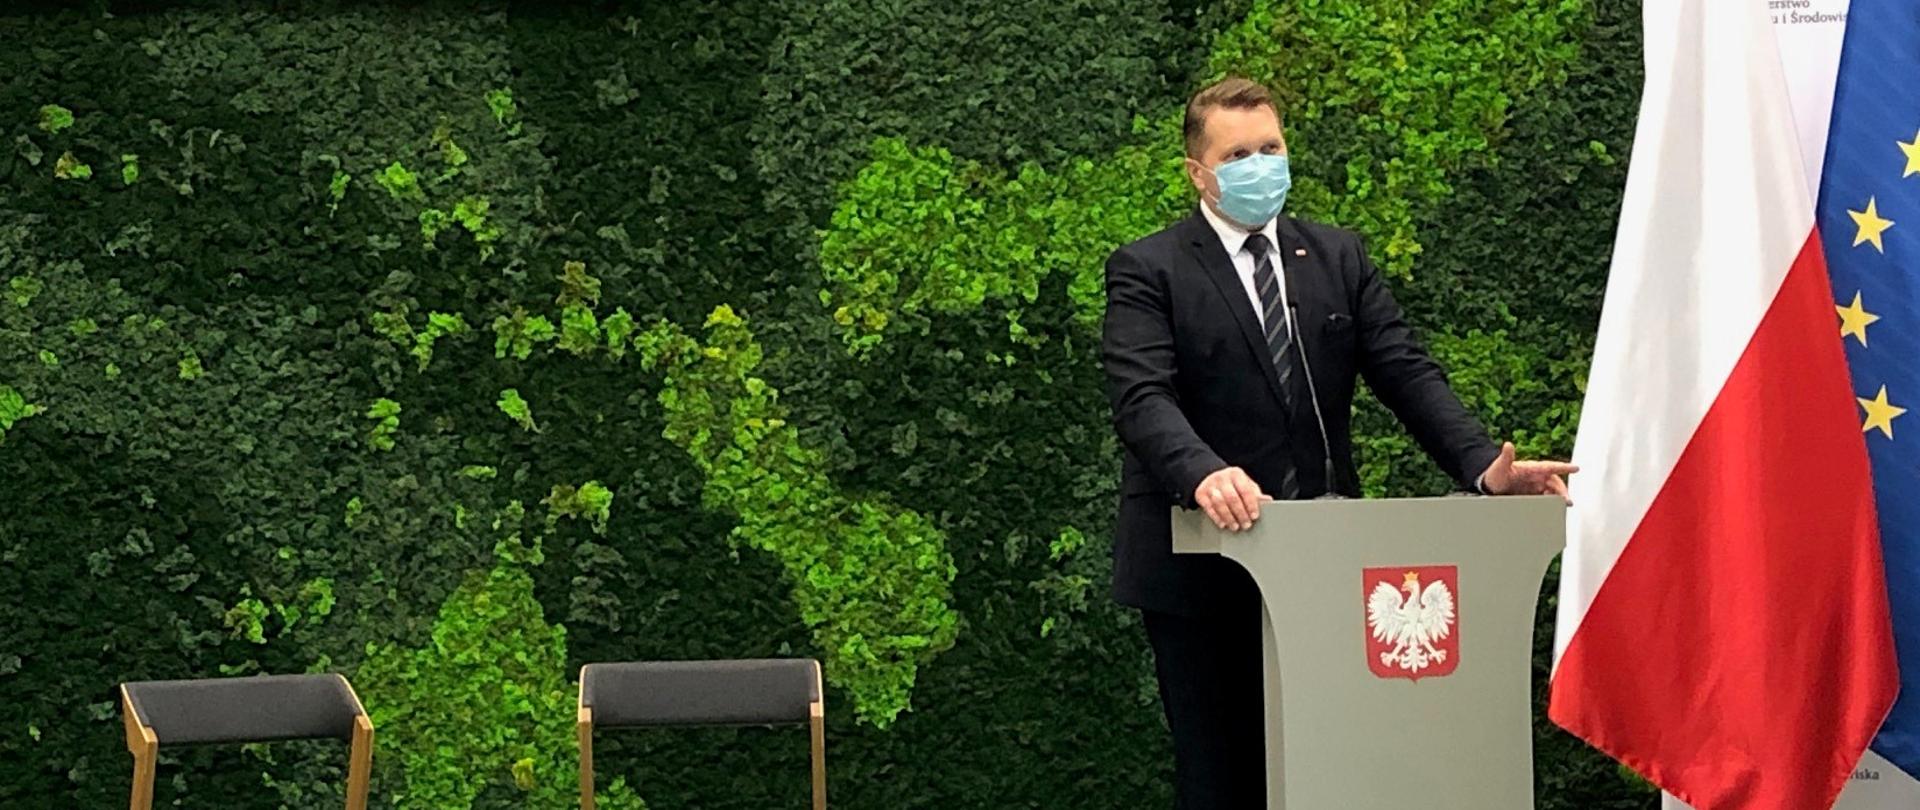 Minister Edukacji i Nauki przemawia stojąc za mównicą z godłem Polski, w tle zielona ściana imitująca rośliny oraz flagi Polski i Unii